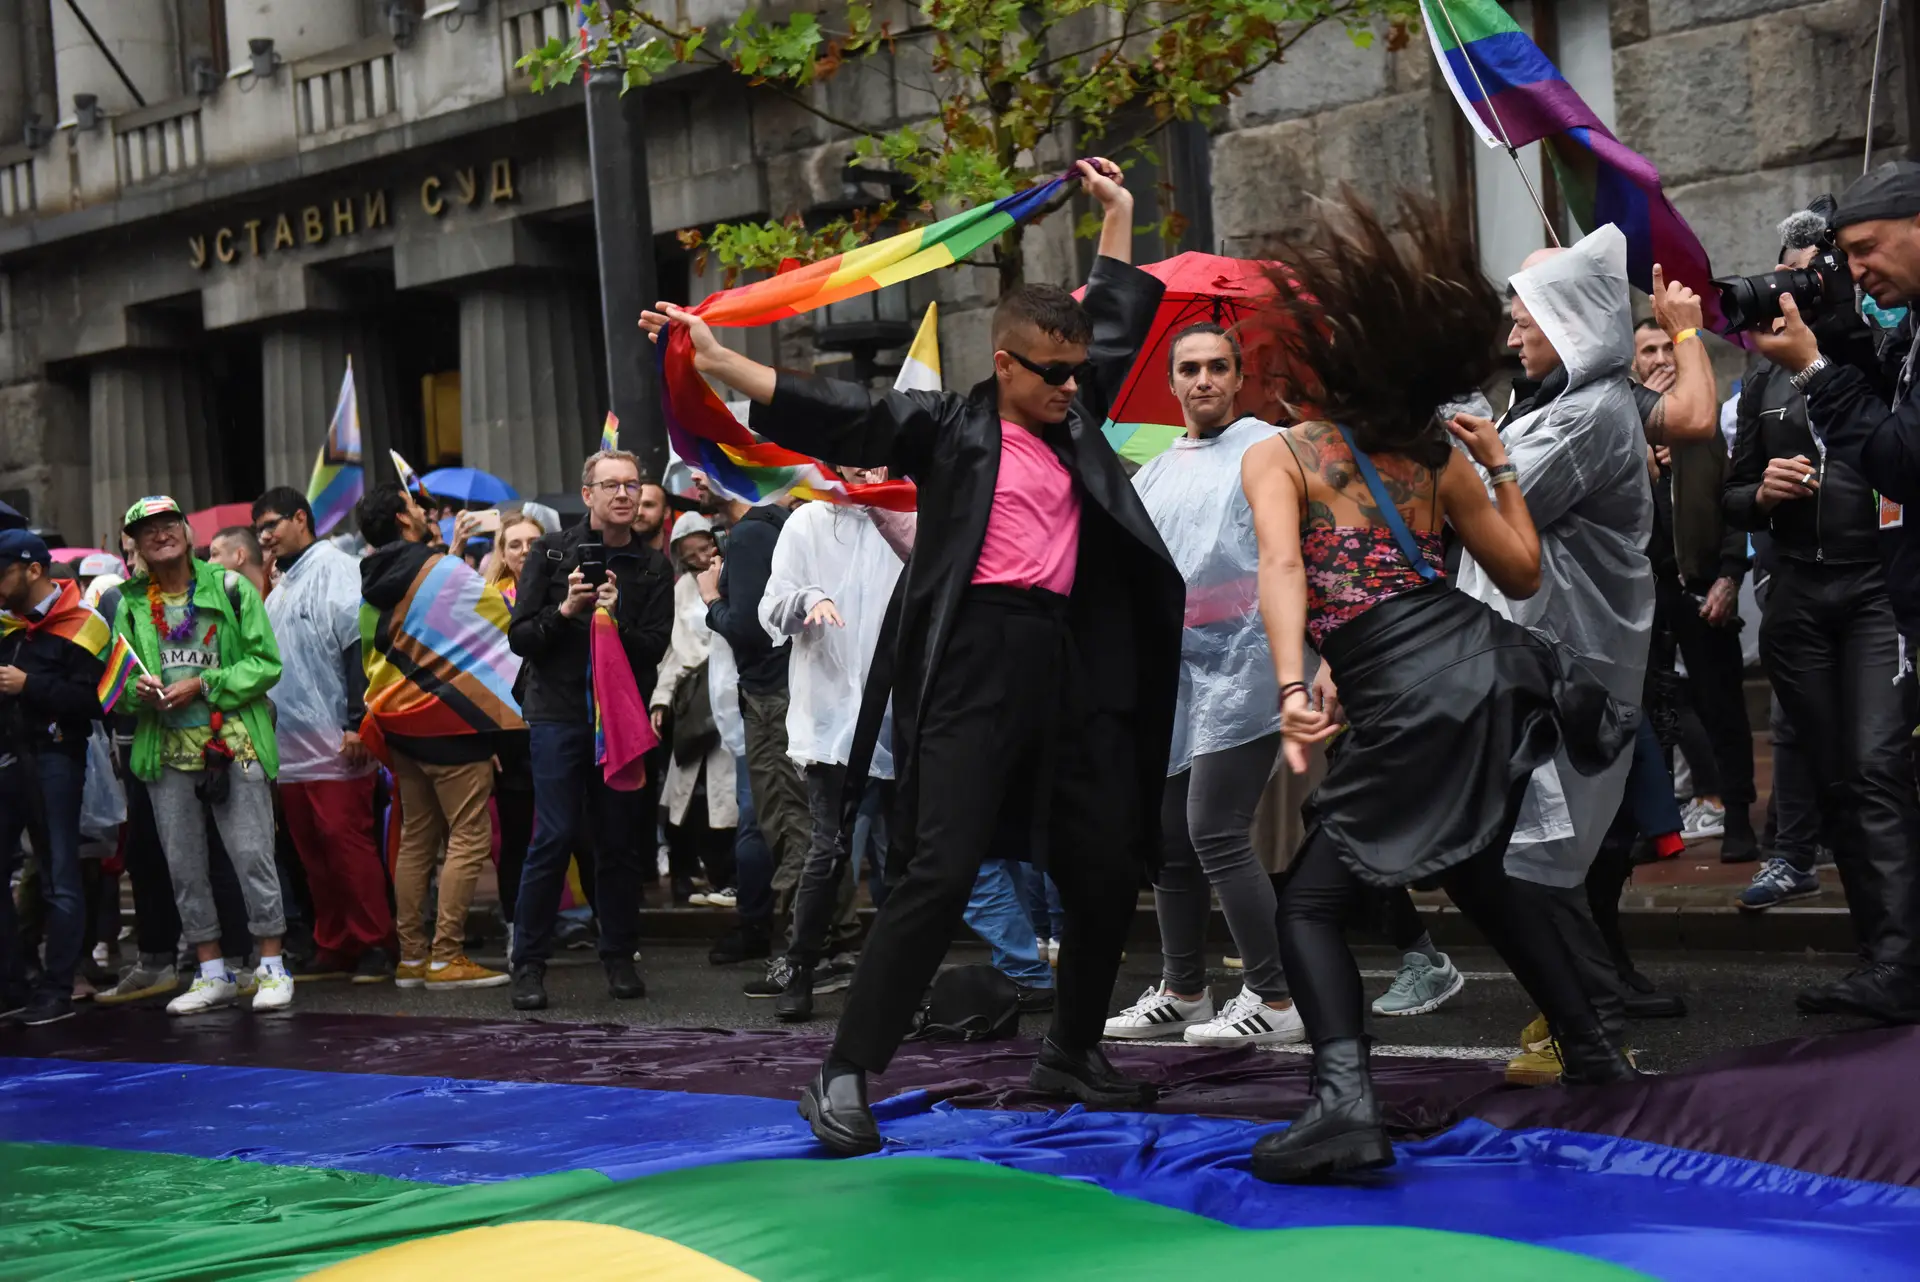 Milhares de ativistas LGBTQ+ participam em desfile proibido em Belgrado